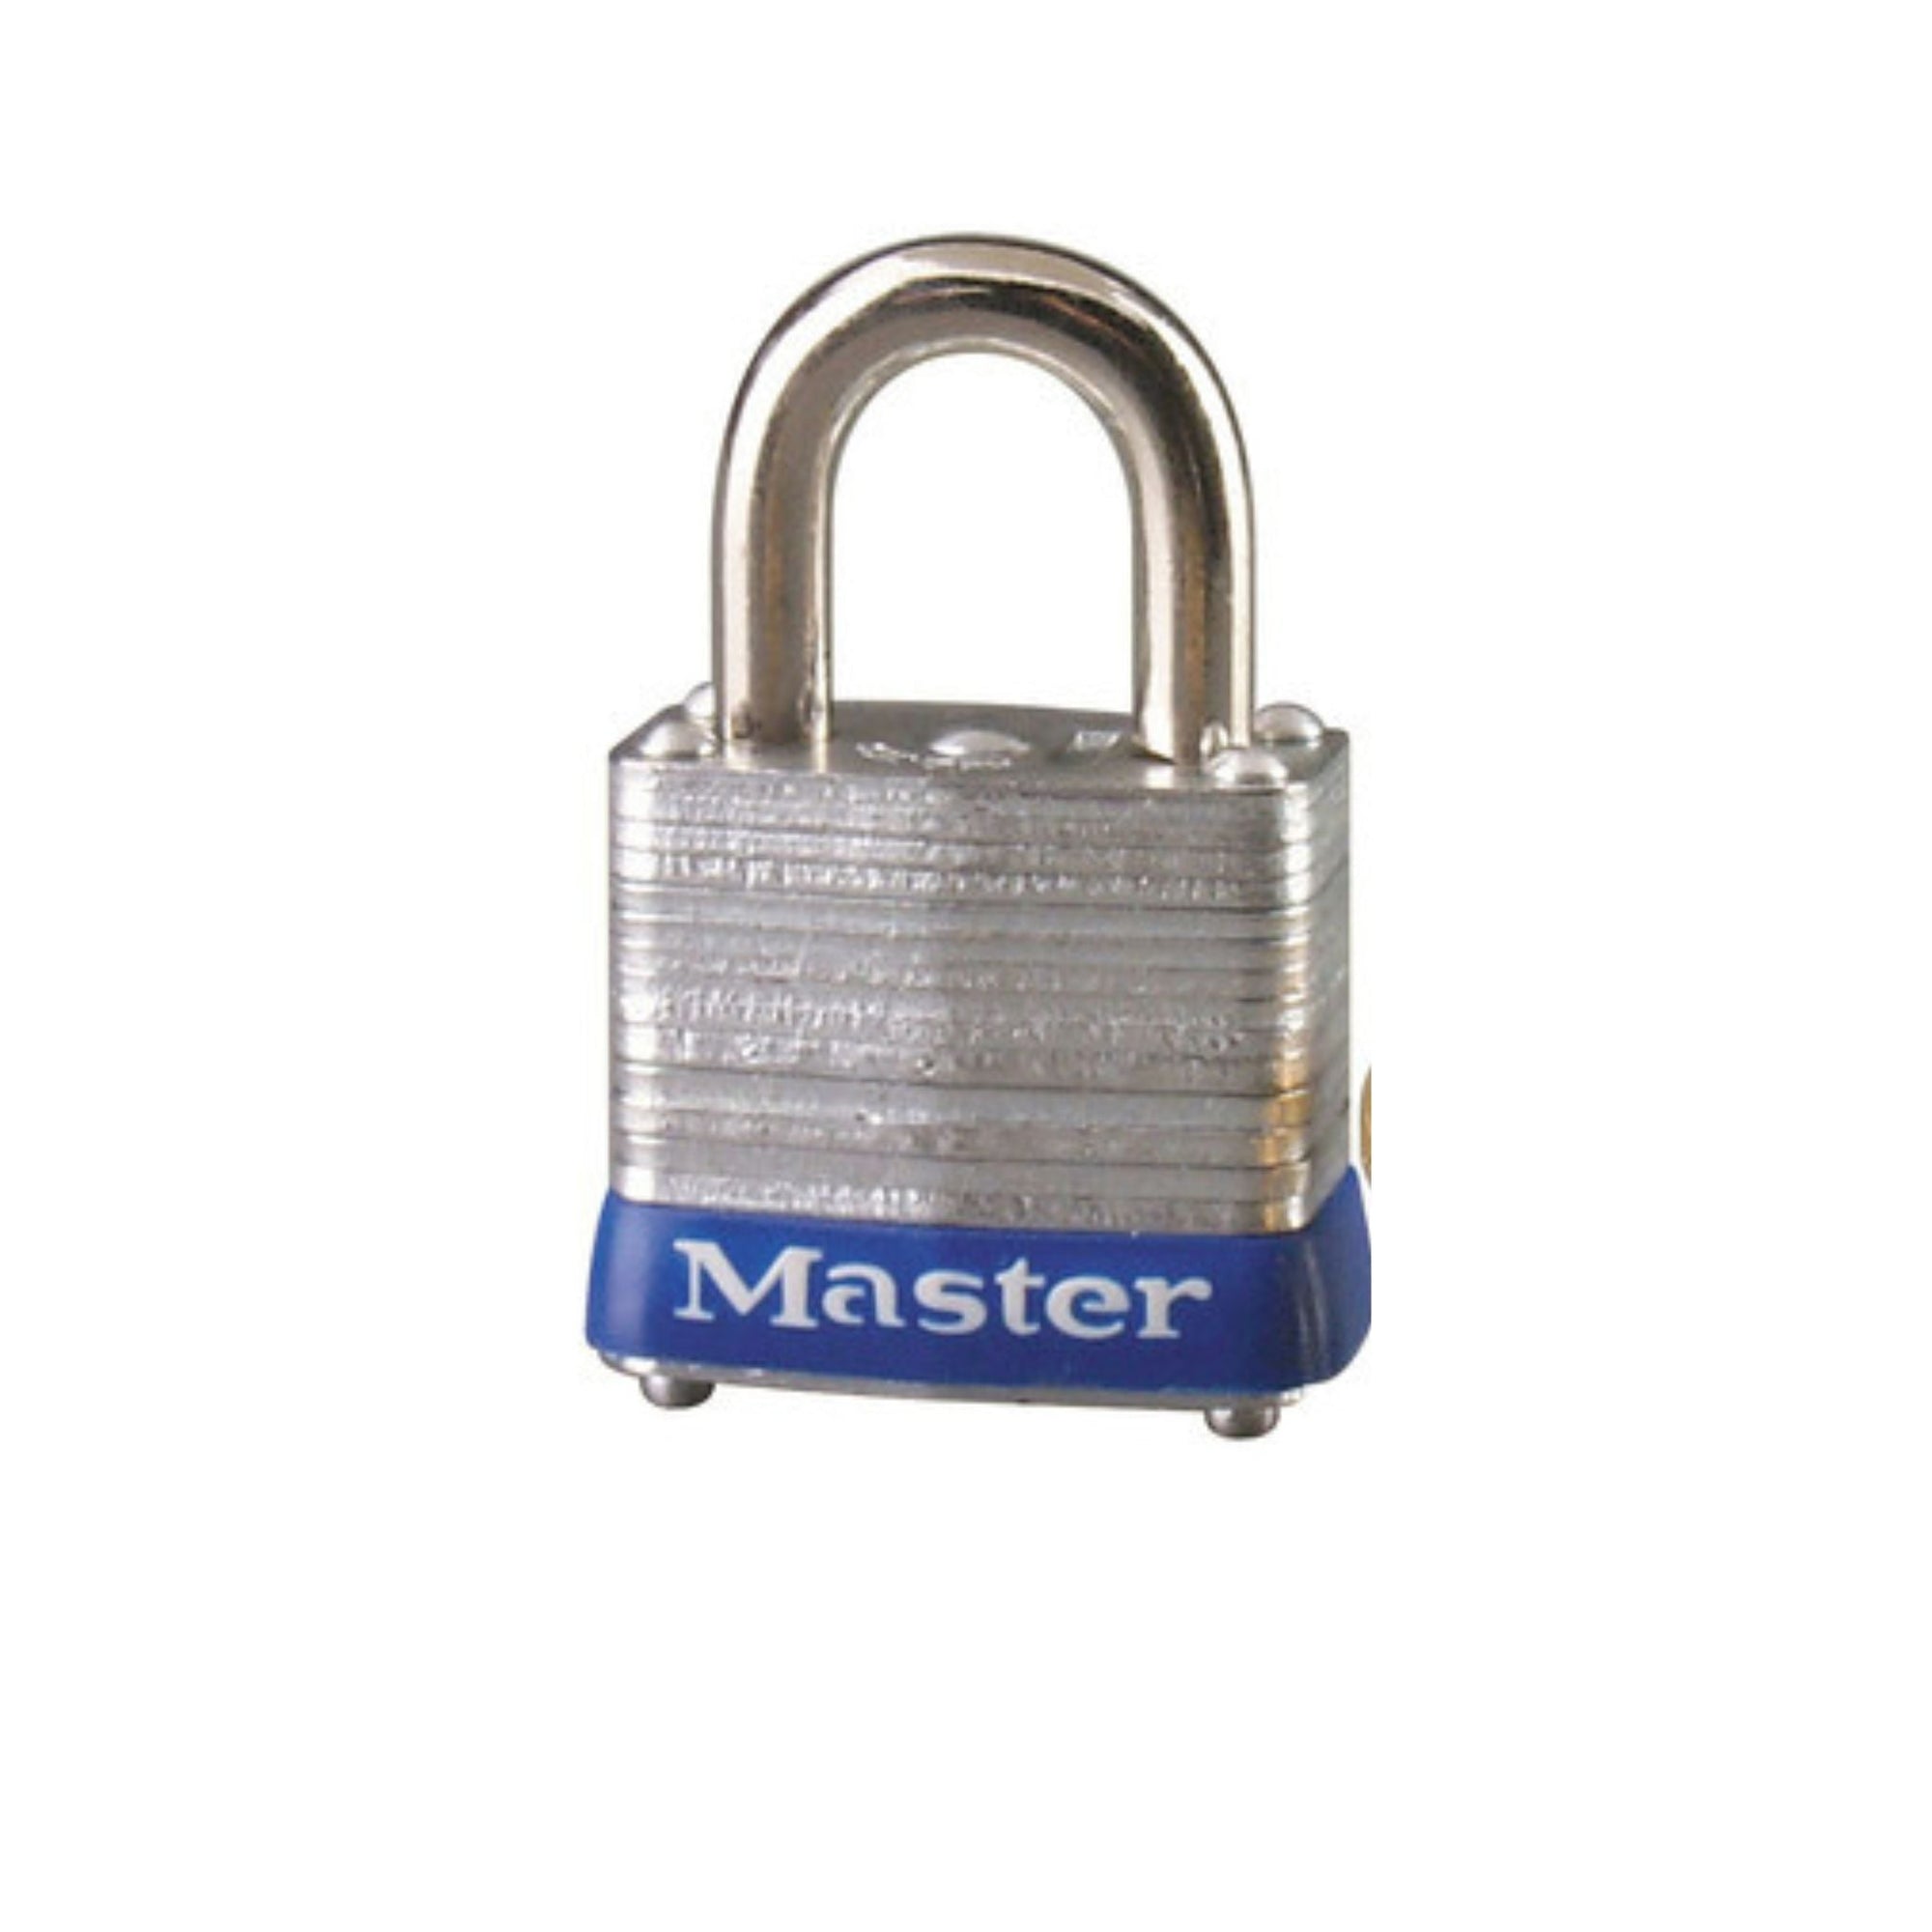 Master Lock 7KA P118 Lock Laminated steel No. 7 Series Padlock Keyed to Match Existing Key Number KAP118 - The Lock Source